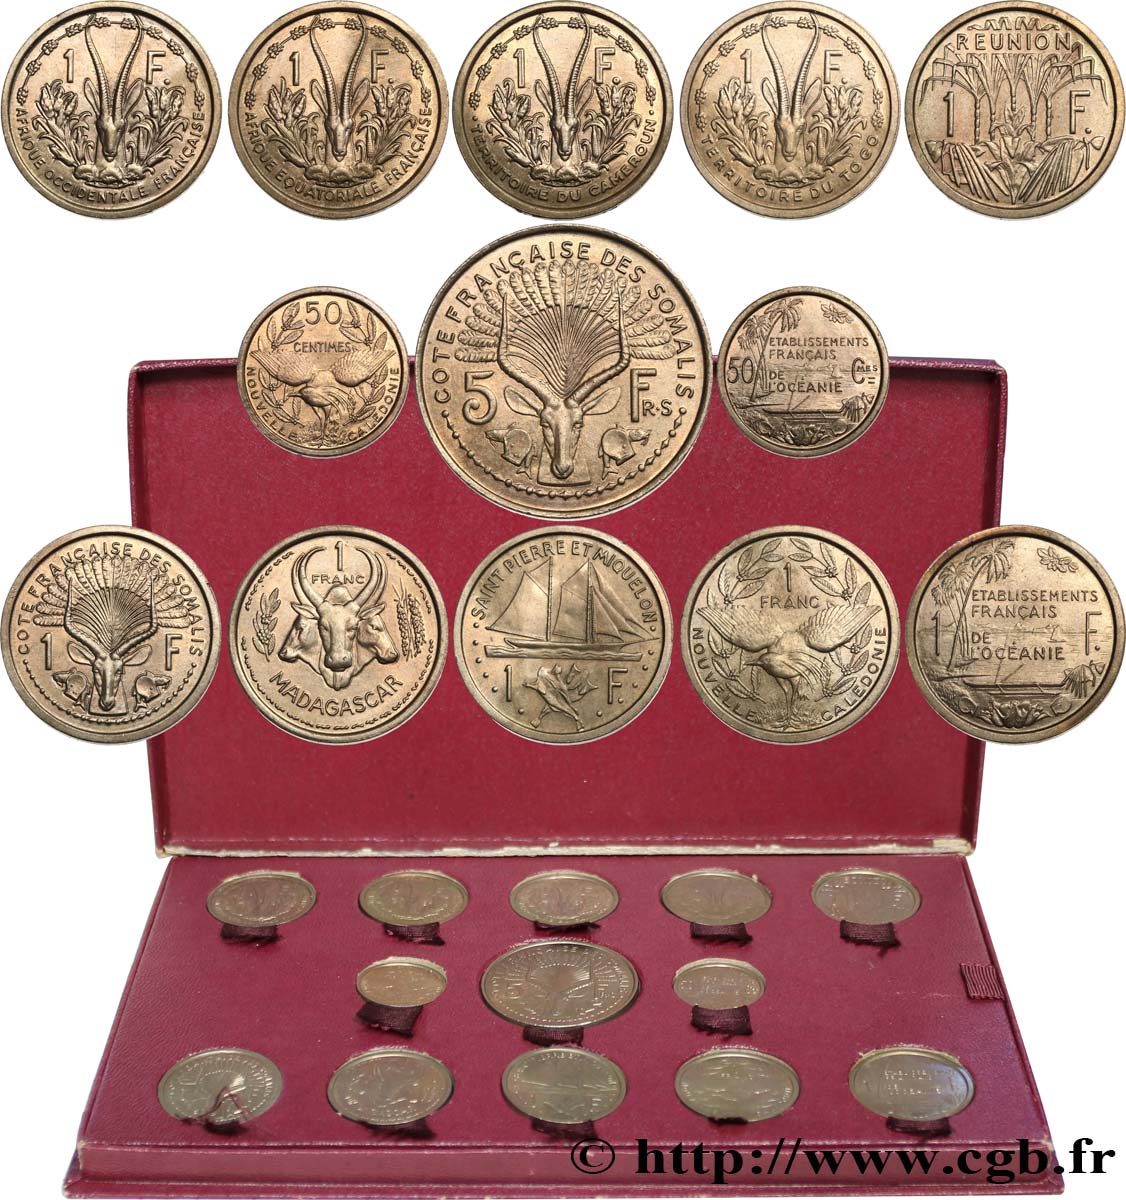 FRANZÖSISCHE UNION - IV. REPUBLIK Coffret de 23 essais Union Française pour les colonies en bronze-nickel 1948-1949 Paris fST 